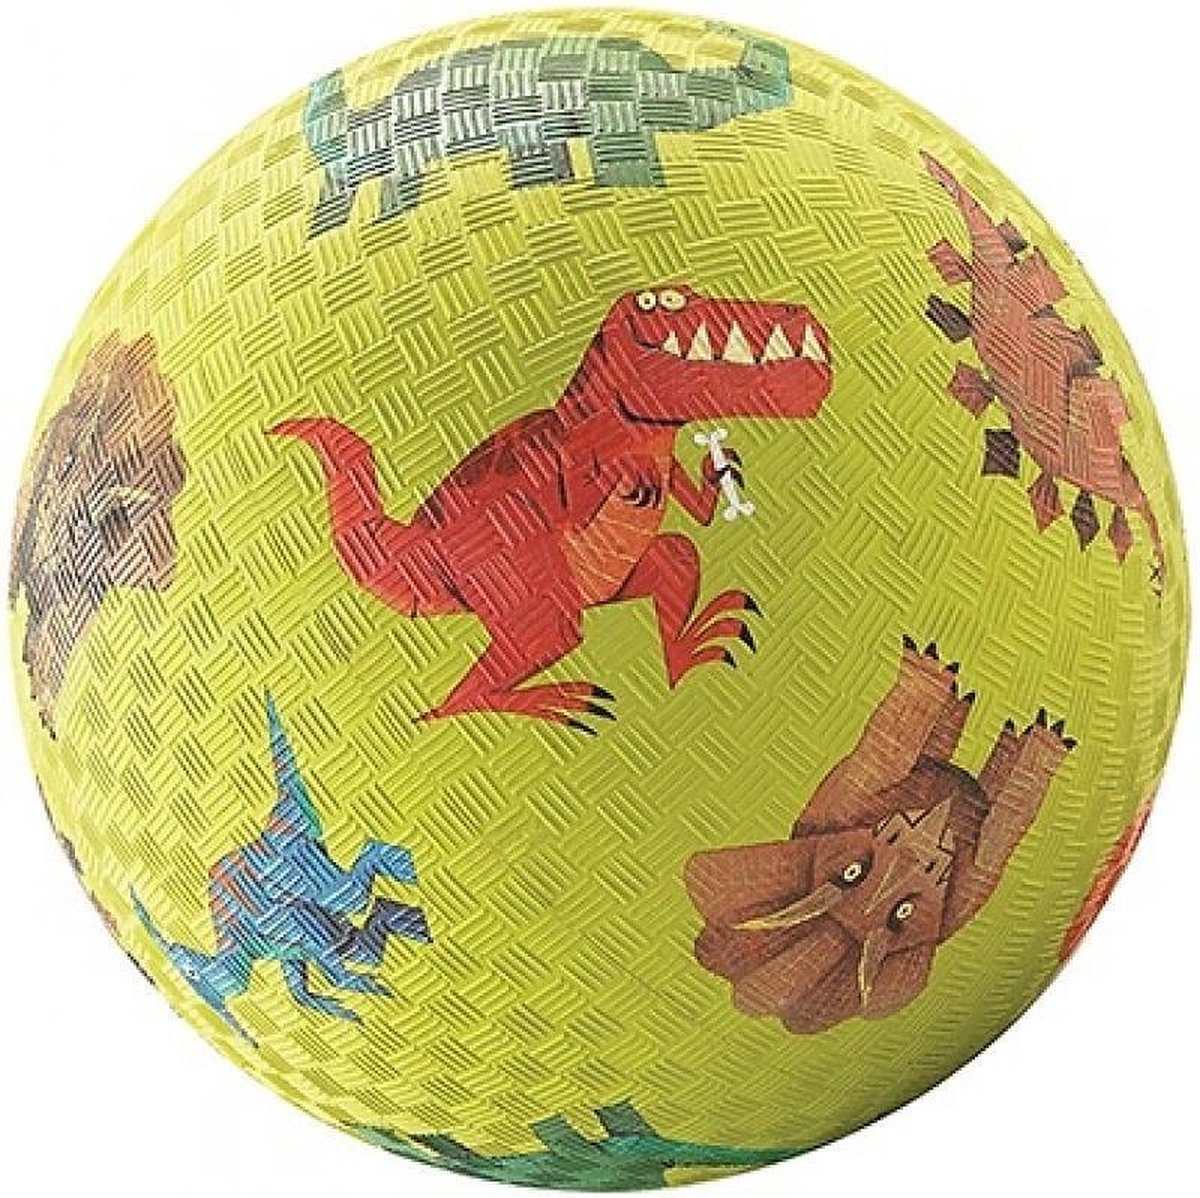 Voetbal (13 cm) - Dinosauriërs | Crocodile Creek